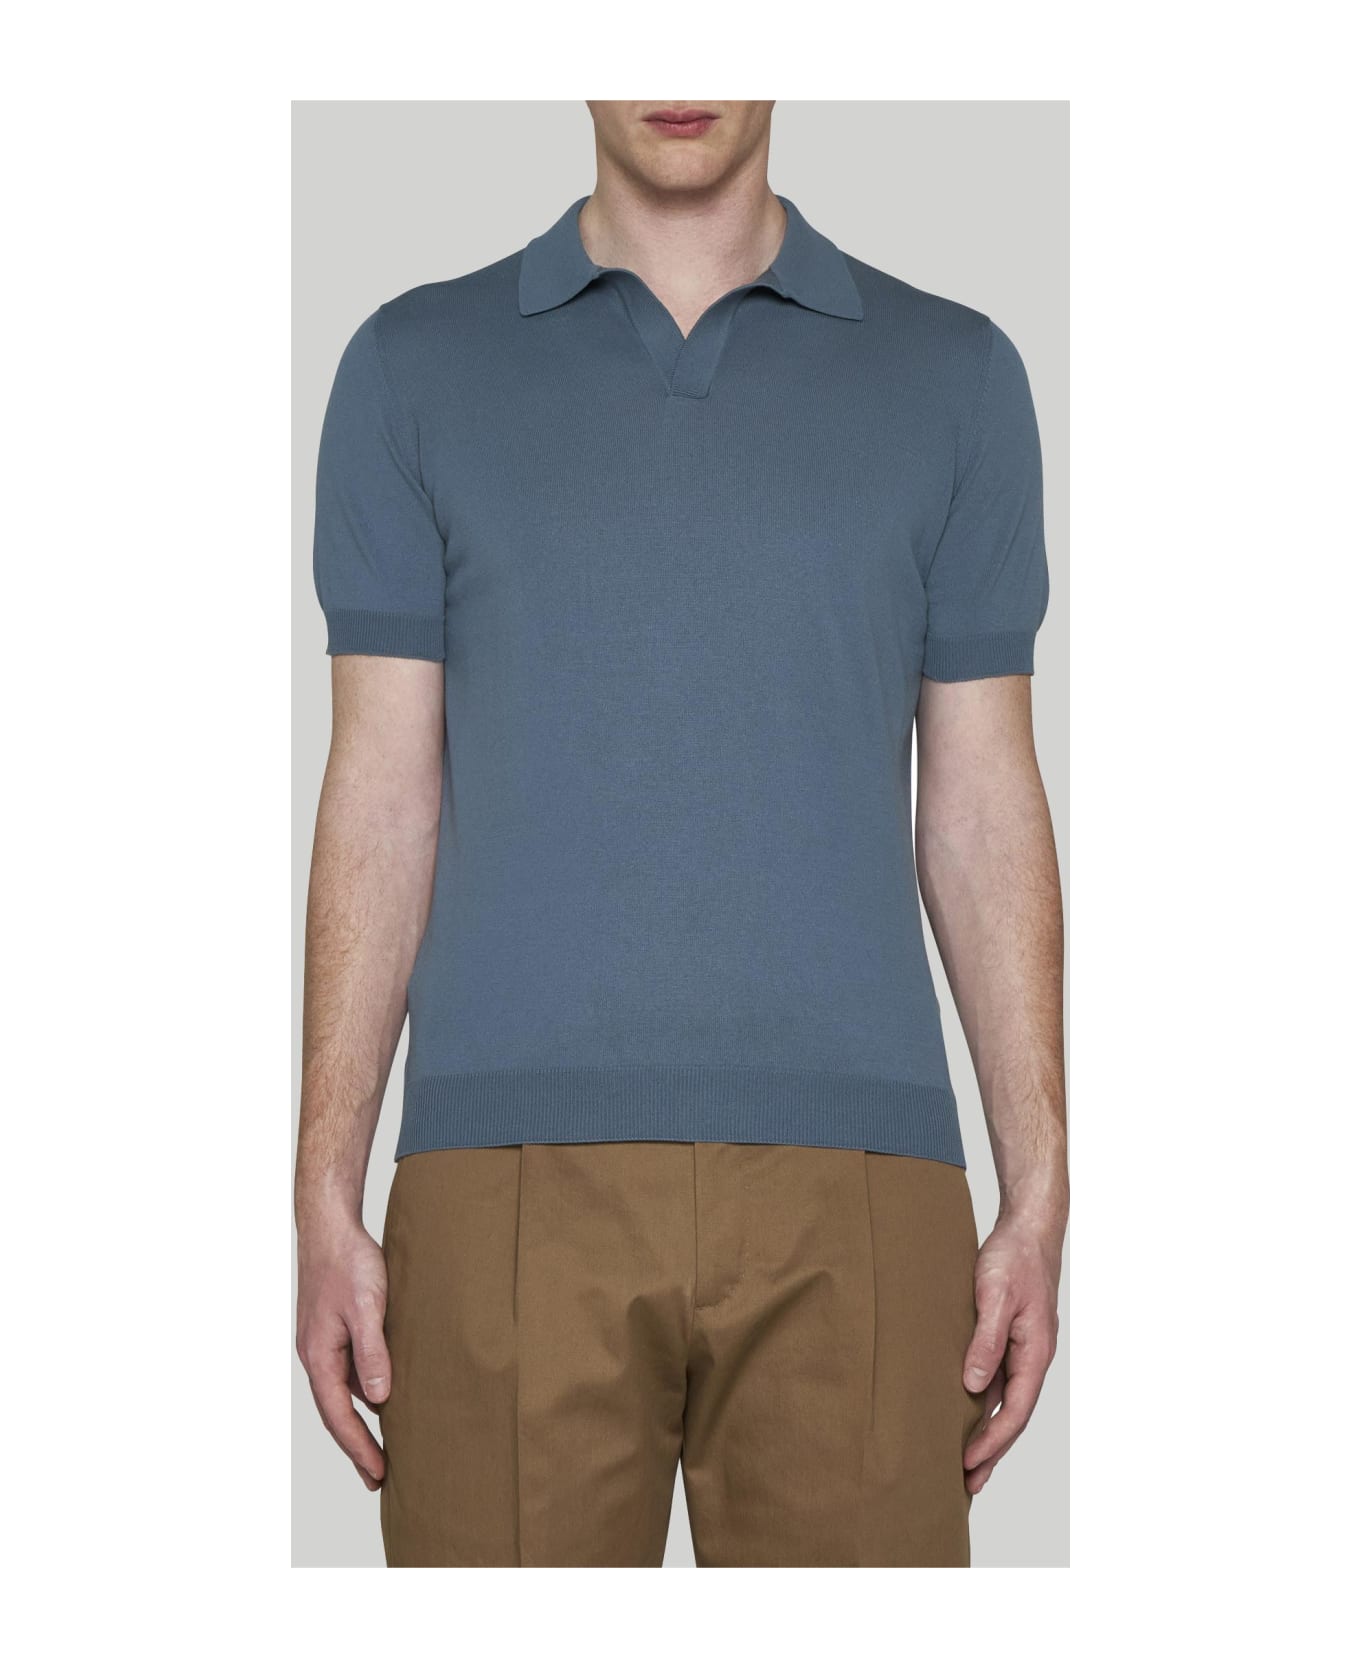 Tagliatore Cotton Polo Shirt - BROWN LEOPARD GREY シャツ